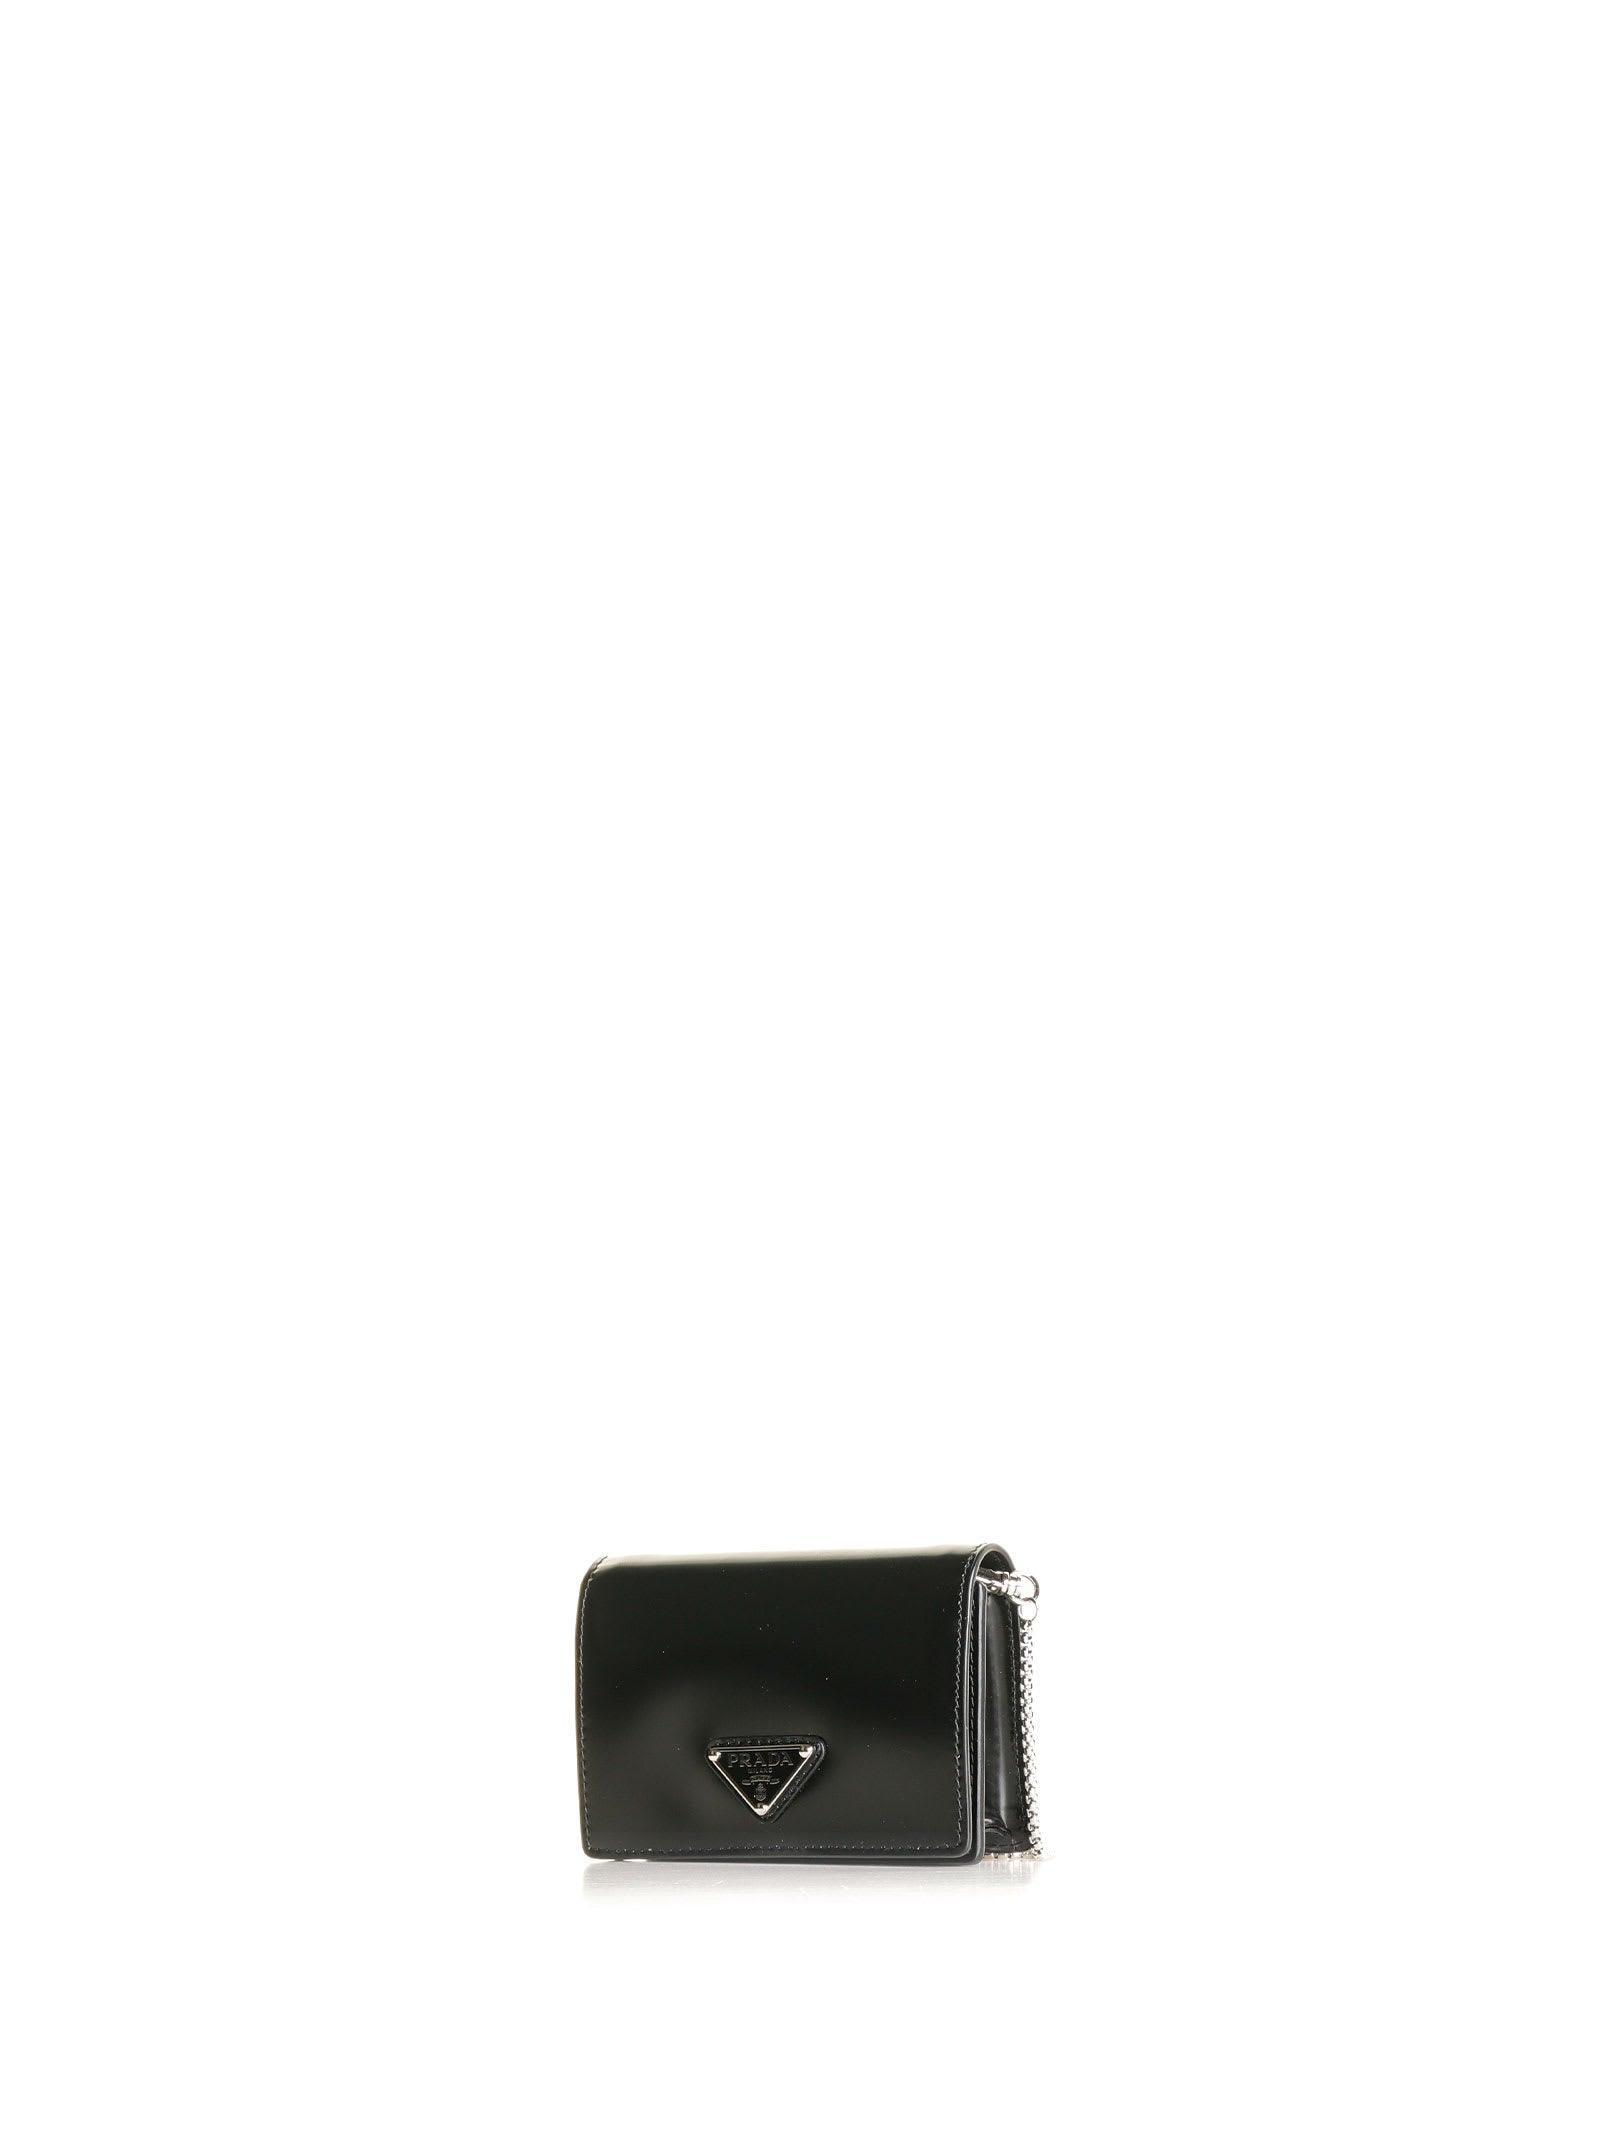 Prada Saffiano Wallet w/ Shoulder Strap - Black Crossbody Bags